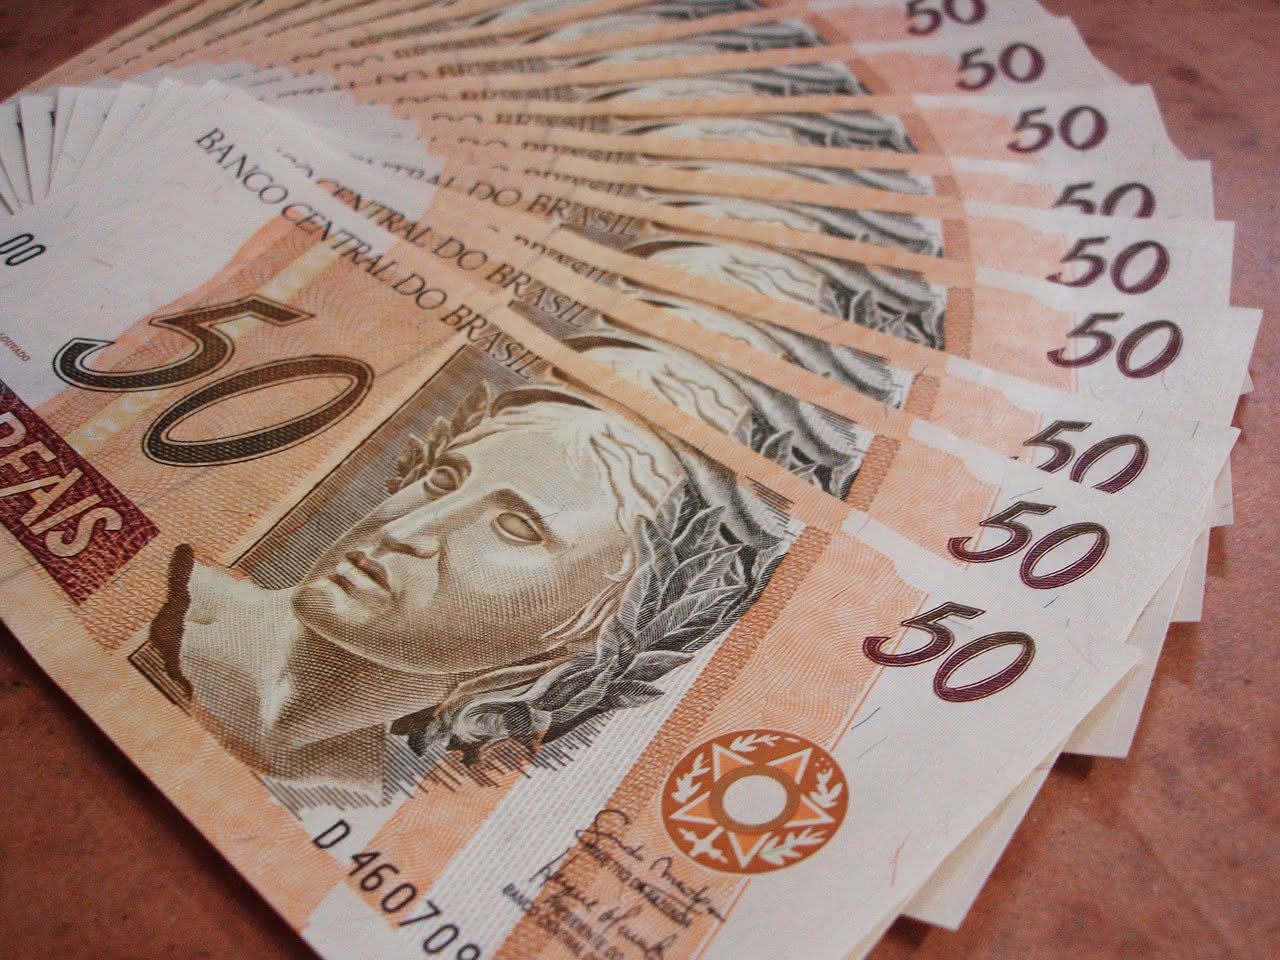 NOVO salário mínimo 2021 começa a valer a partir de AMANHÃ (01); confira o valor